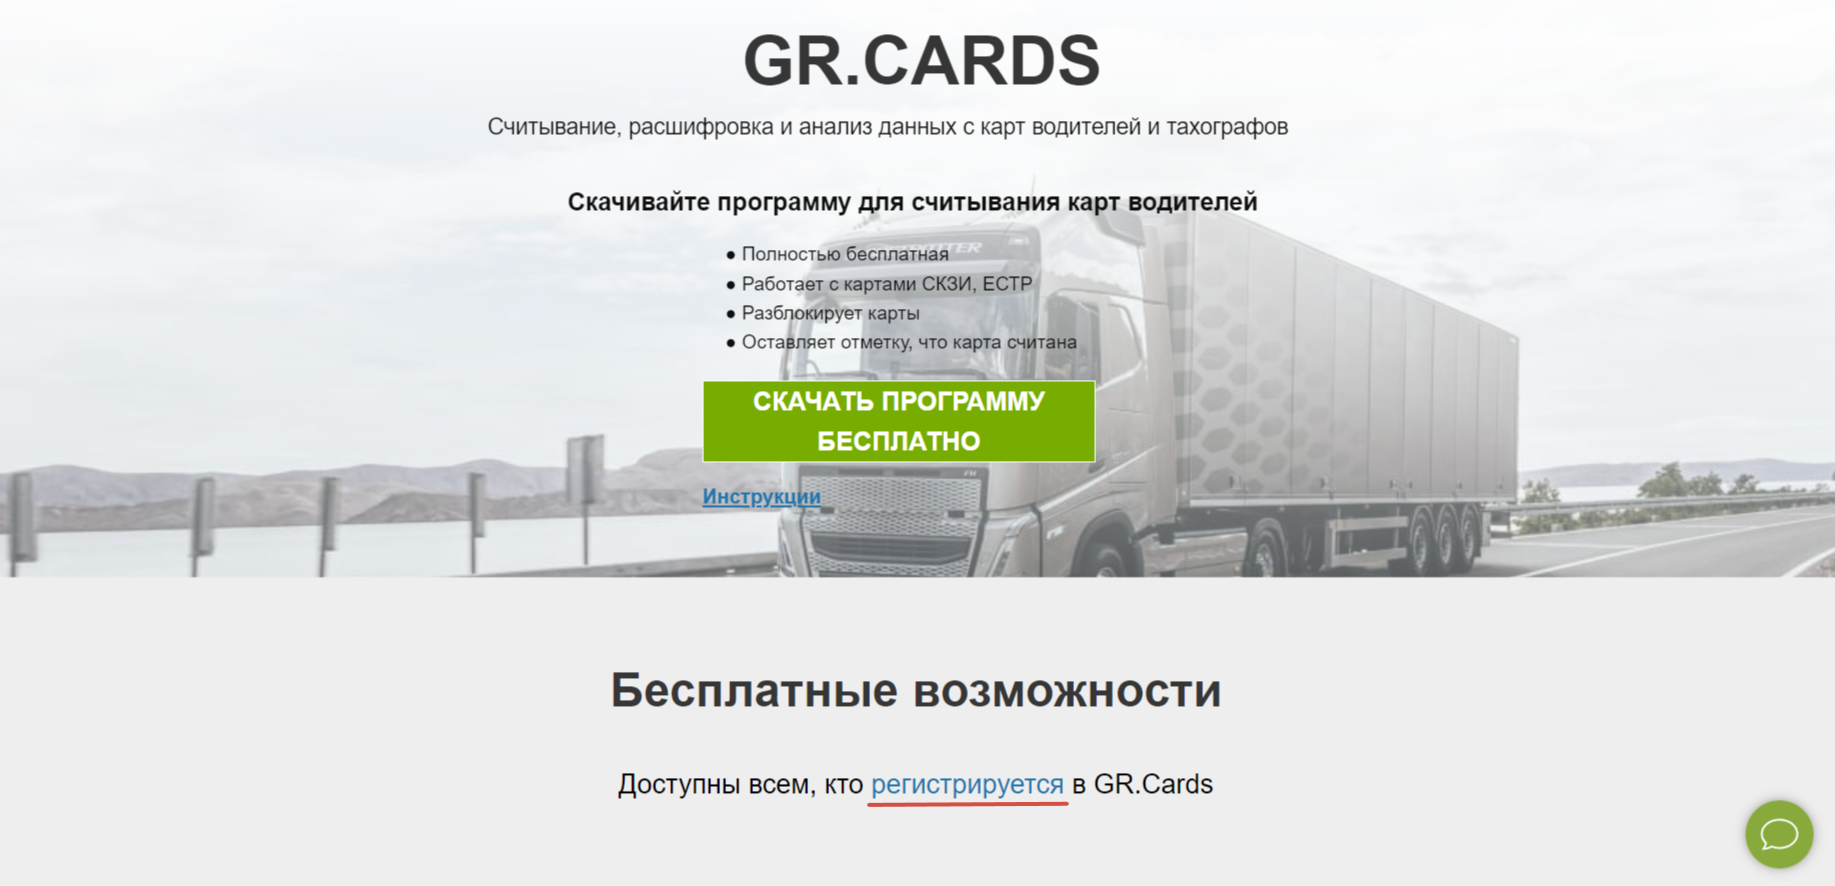 Перейдите по ссылке georoute.ru и нажмите кнопку "Зарегистрироваться"